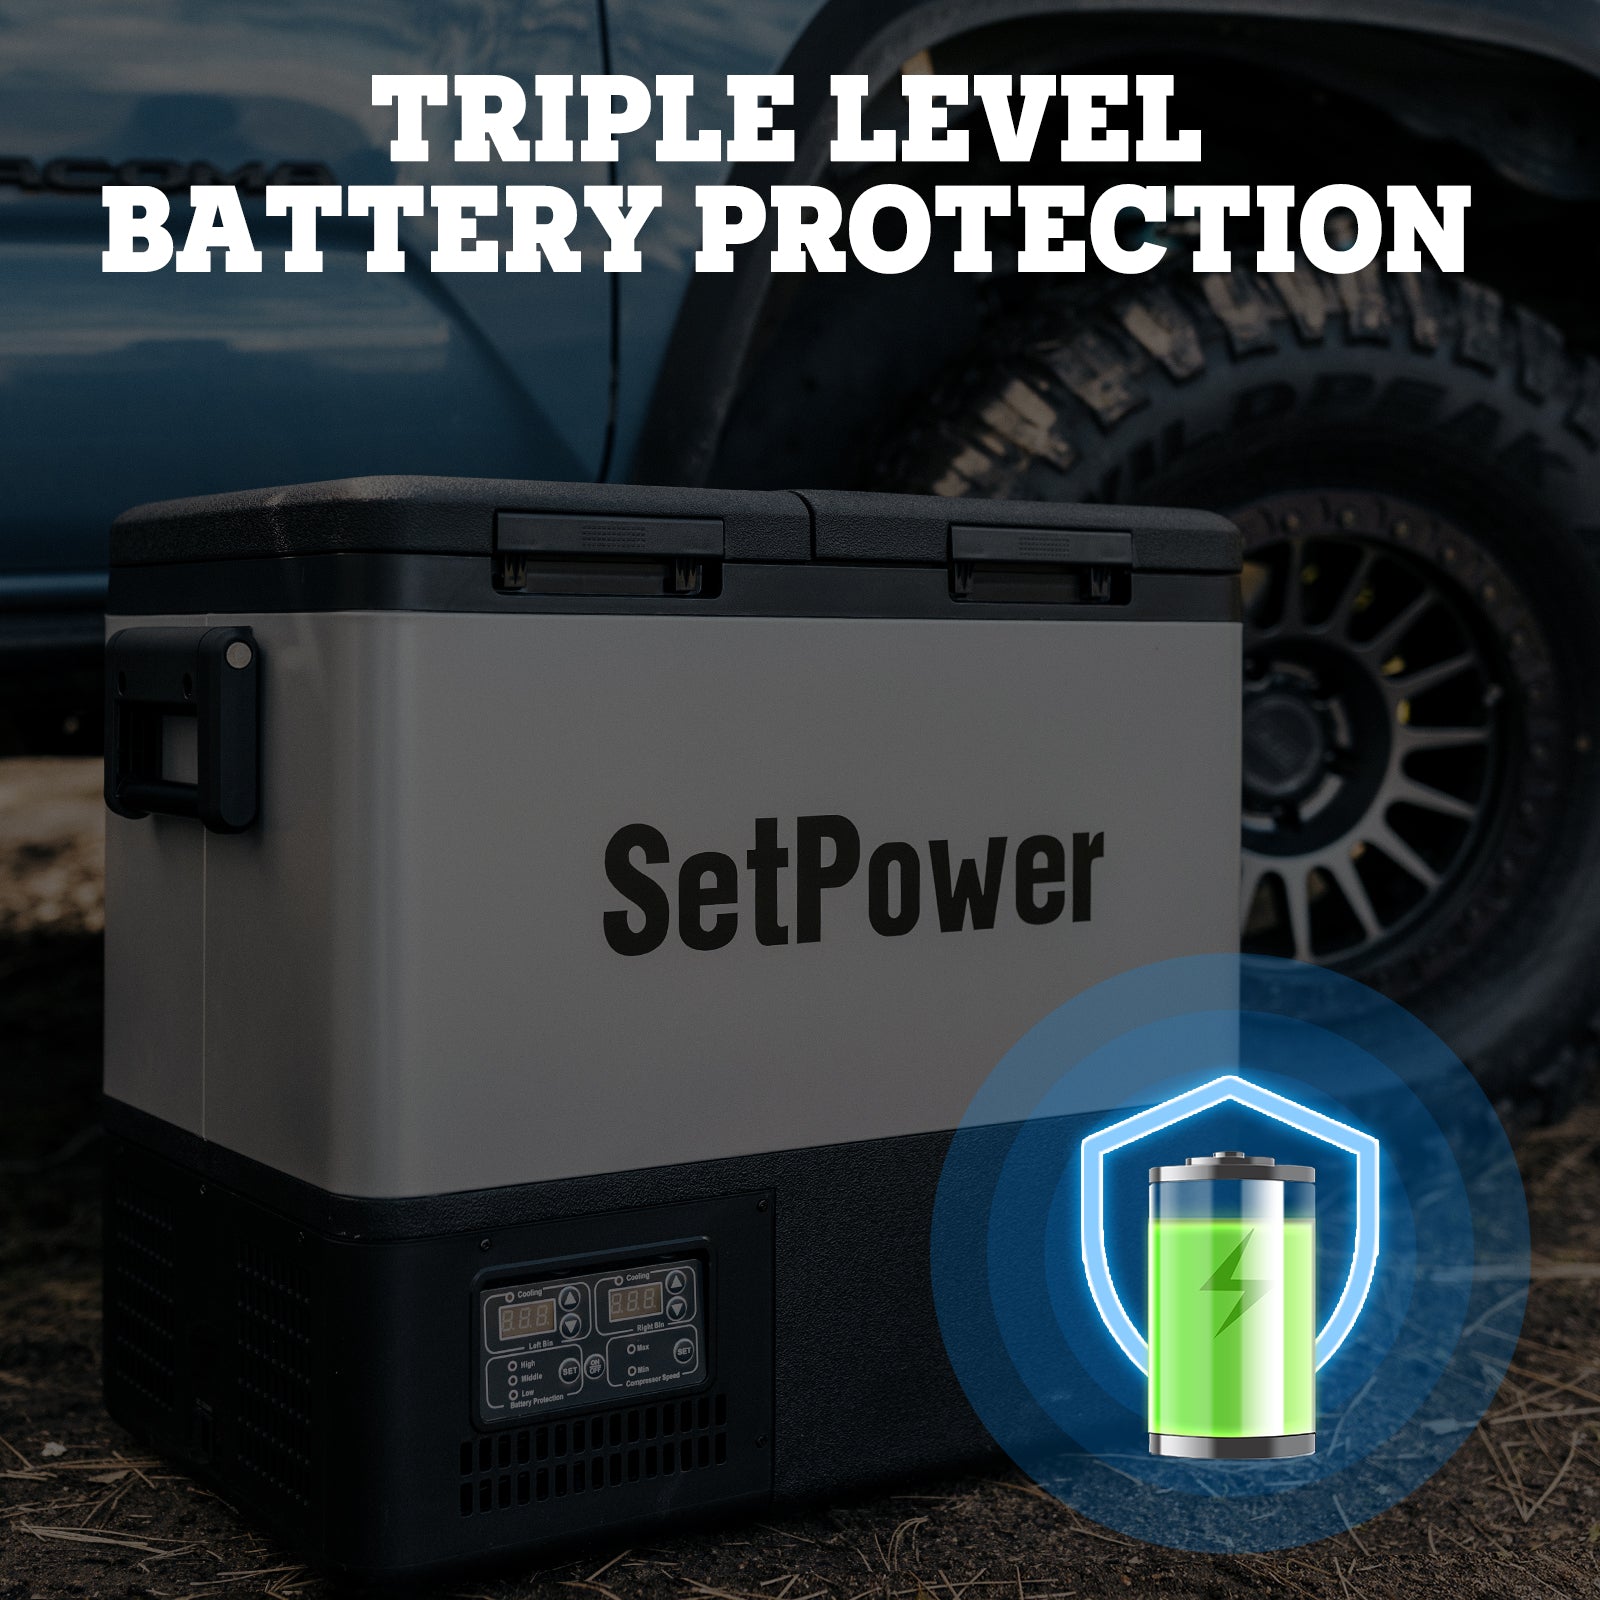 Setpower 58Qt PT55 Dual Zone 12 Volt Car Refrigerator